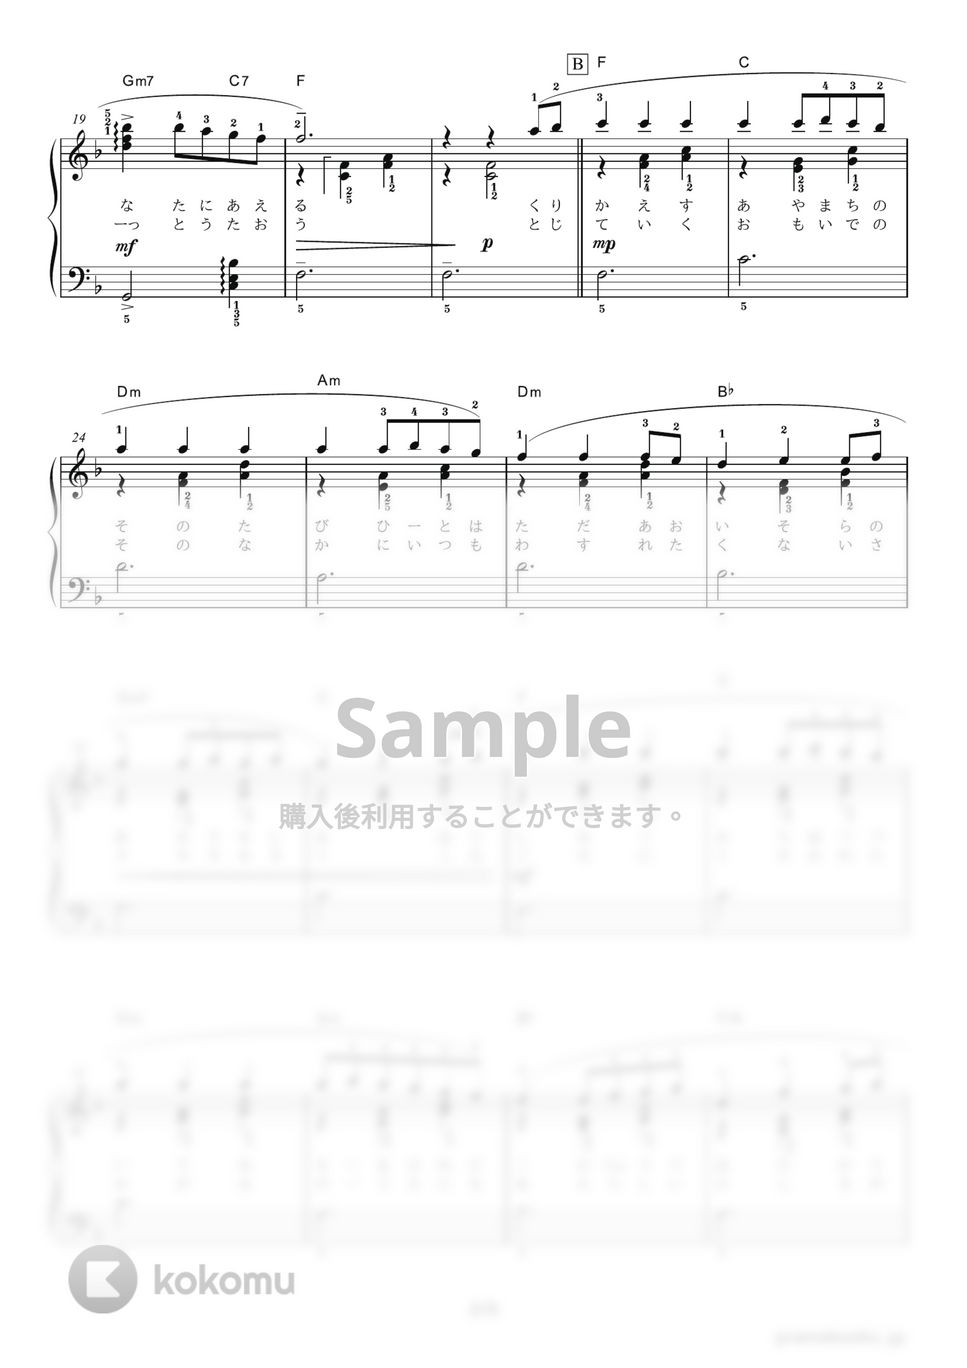 木村 弓 - いつも何度でも by ピアノの本棚